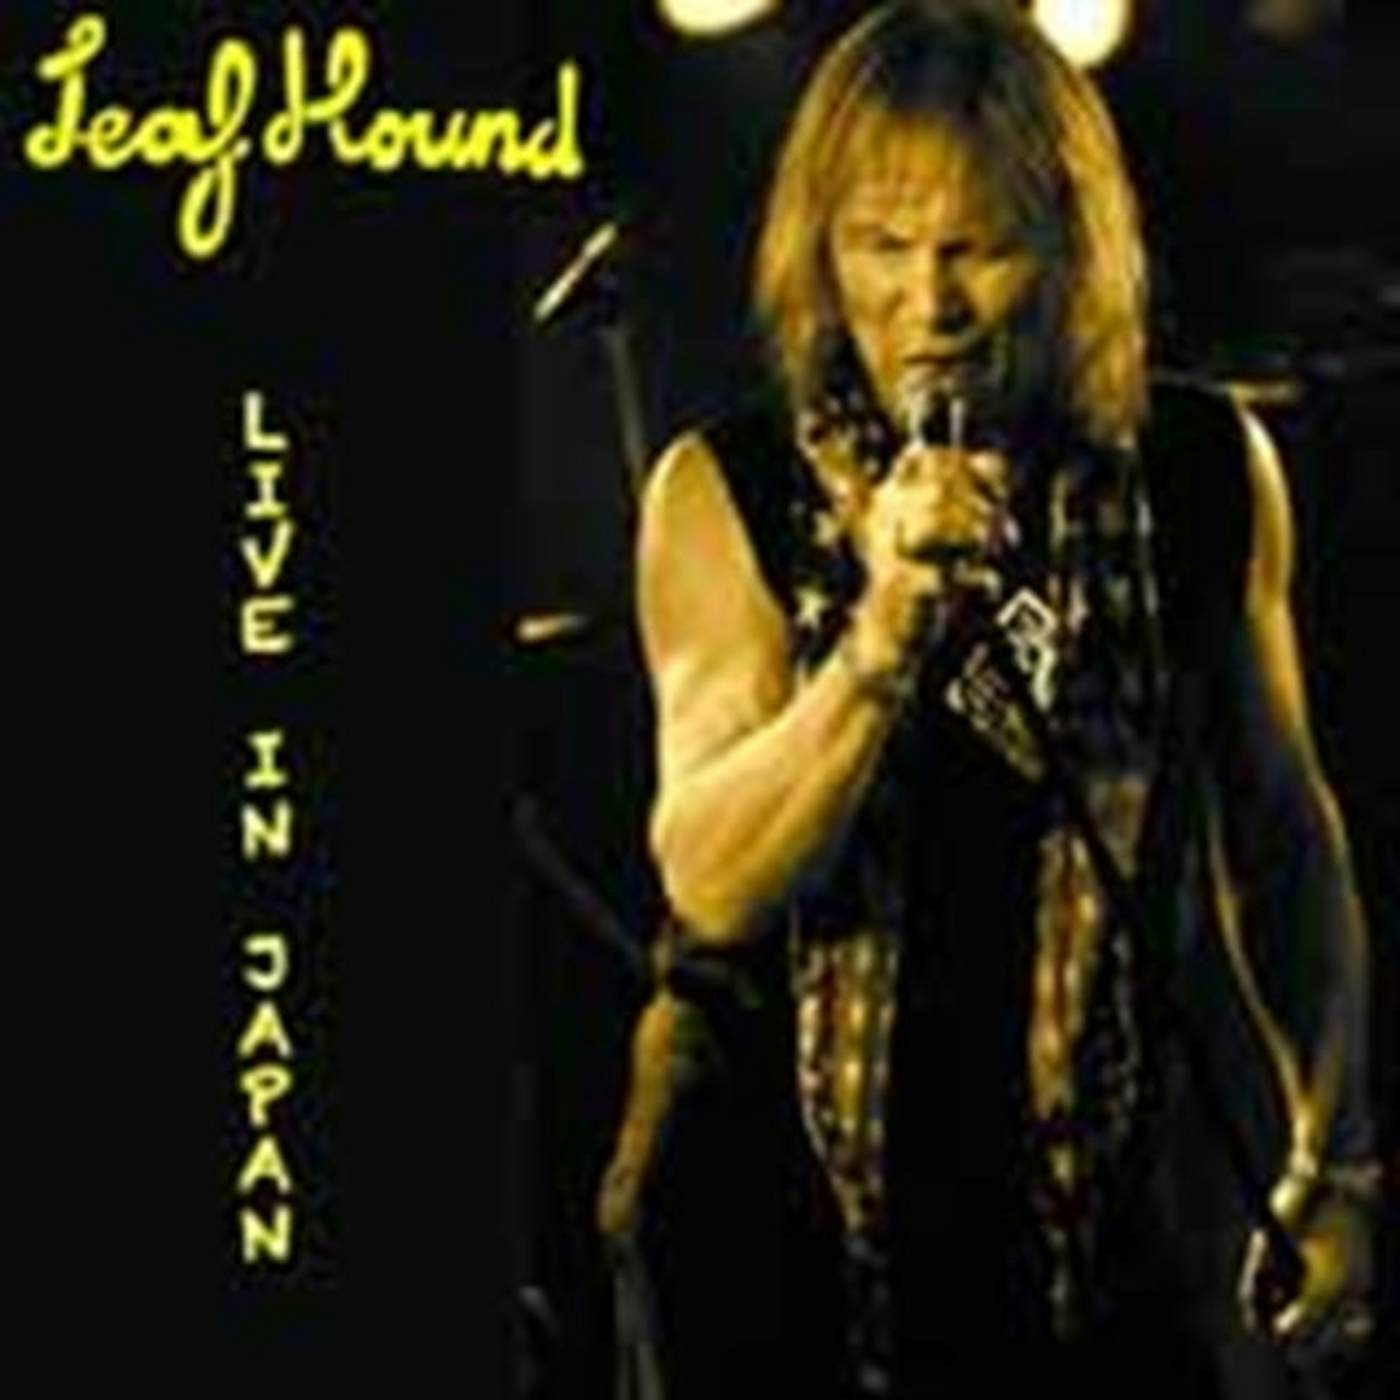 Leaf Hound CD - Live In Japan 20. 12